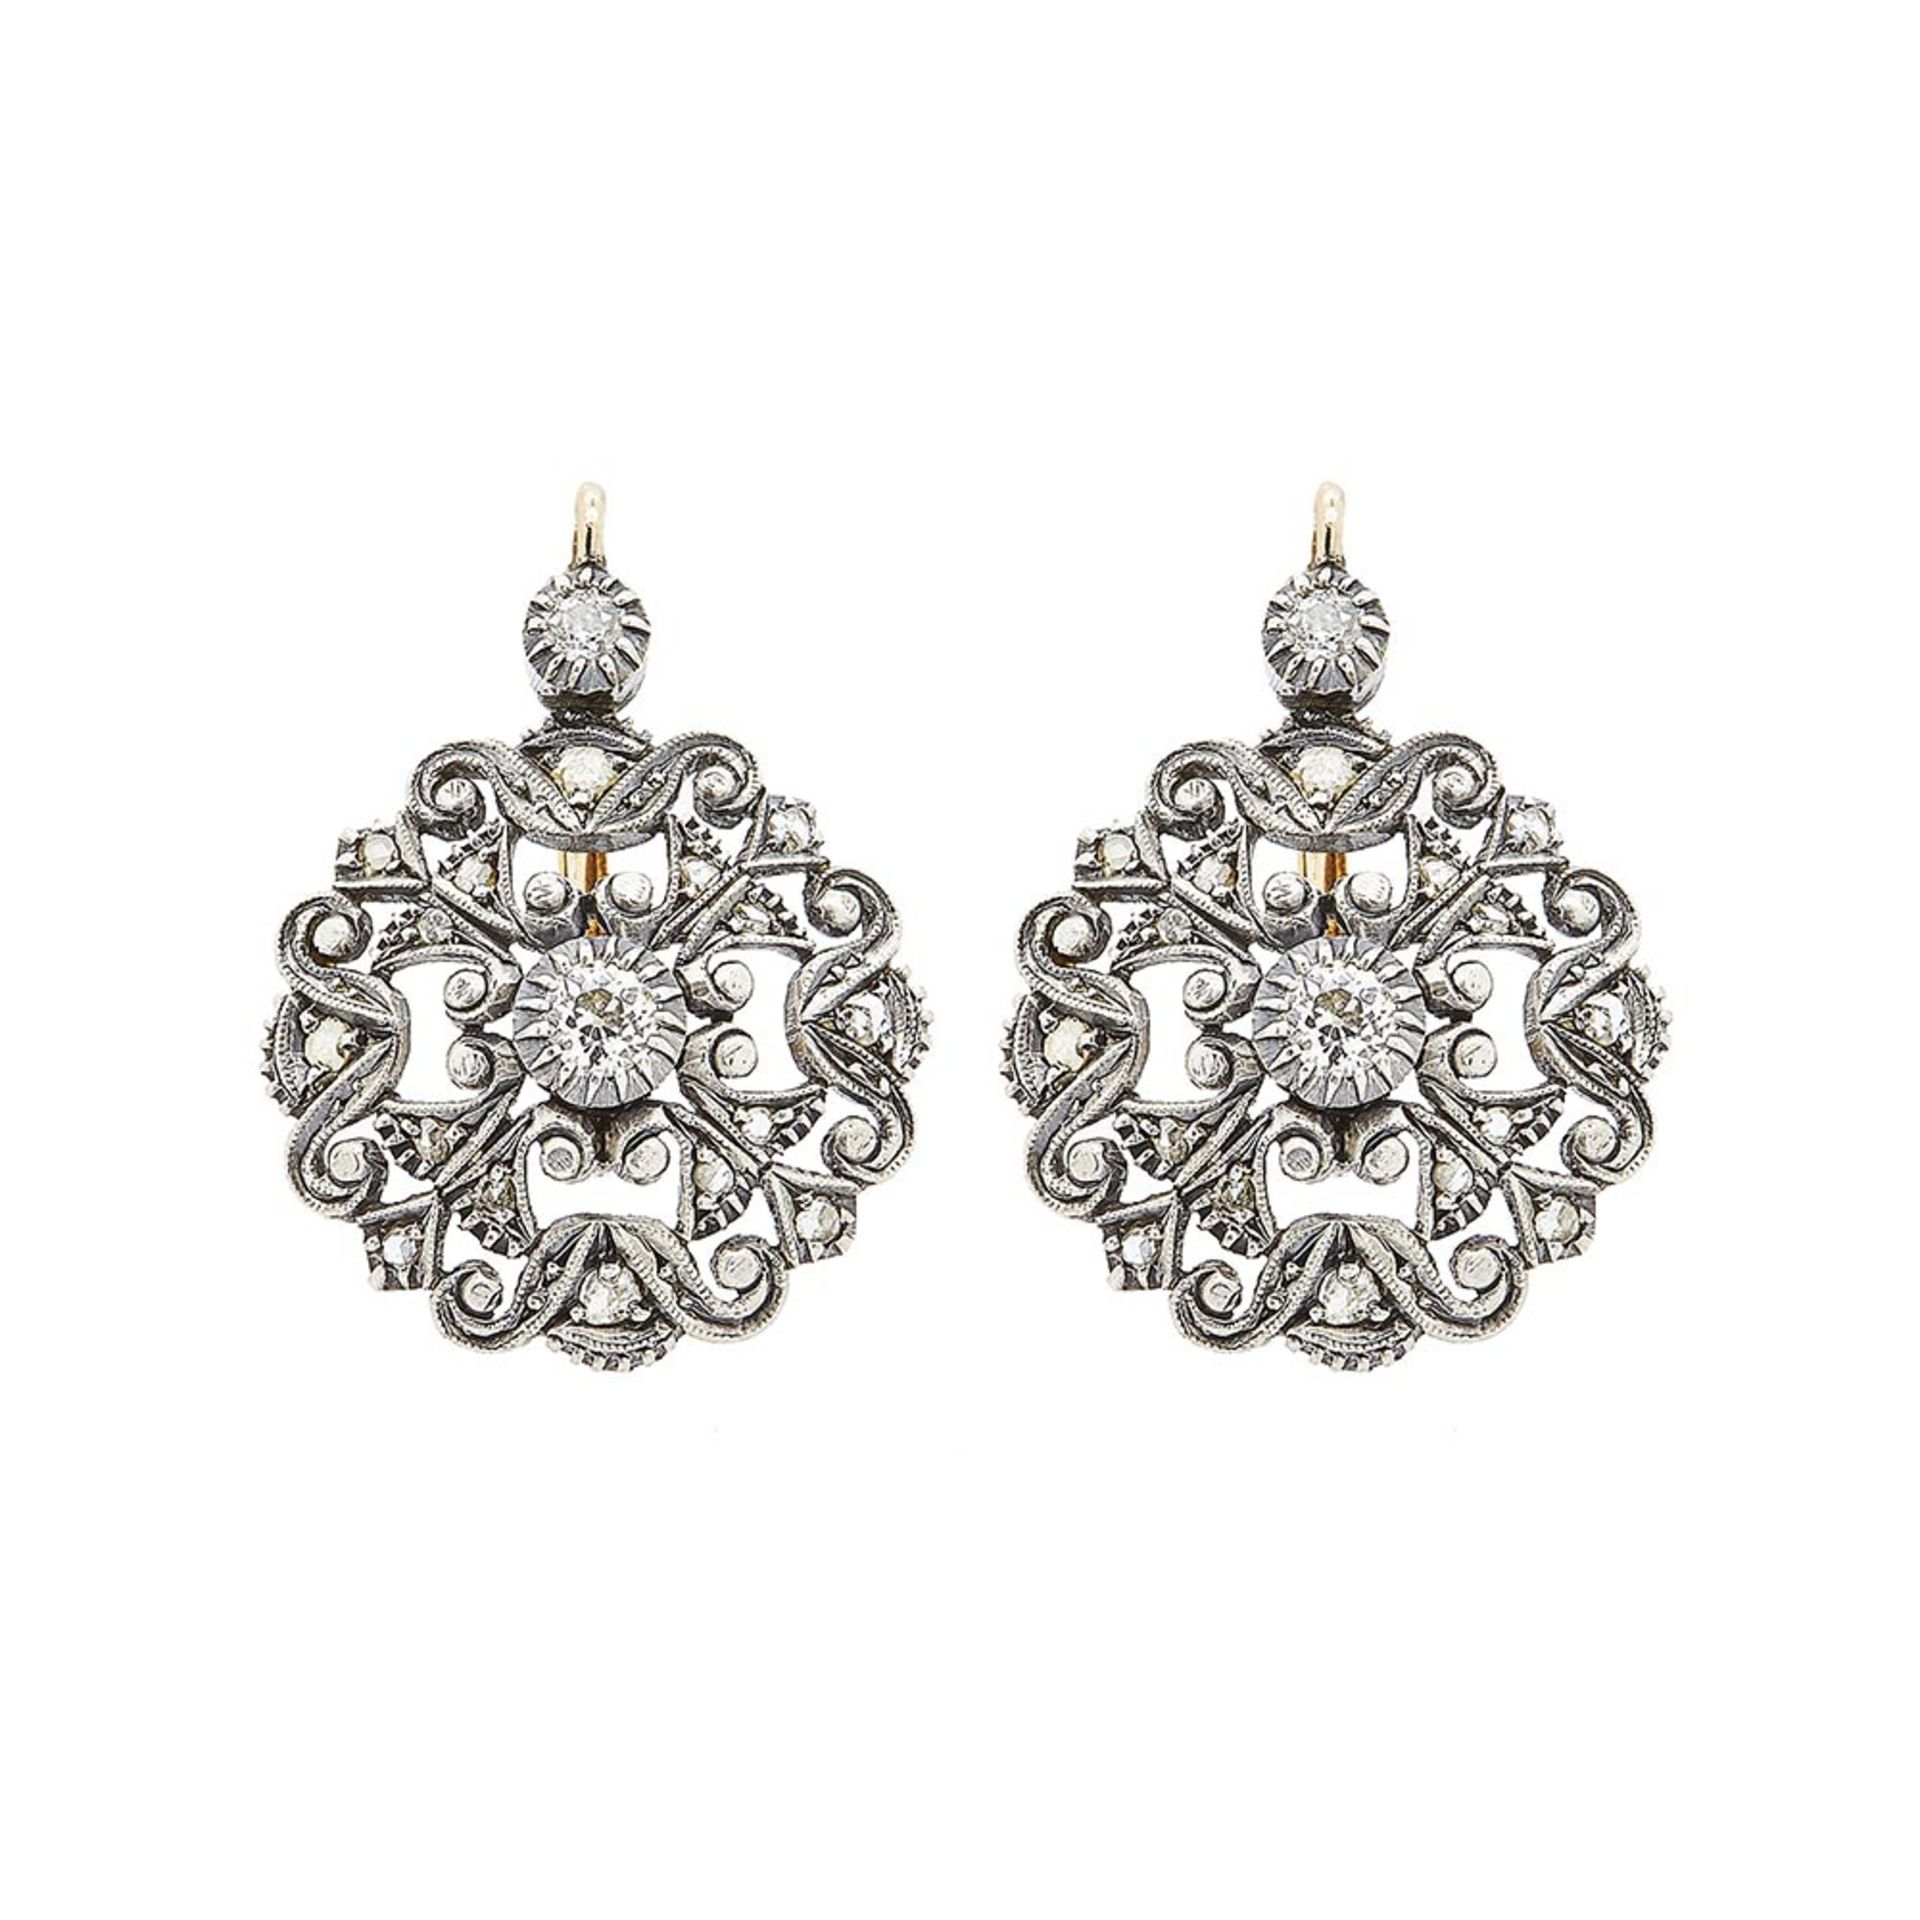 Pendientes estilo isabelino en oro y plata con diamantes tallas brillante antigua y rosa 3/3. Peso